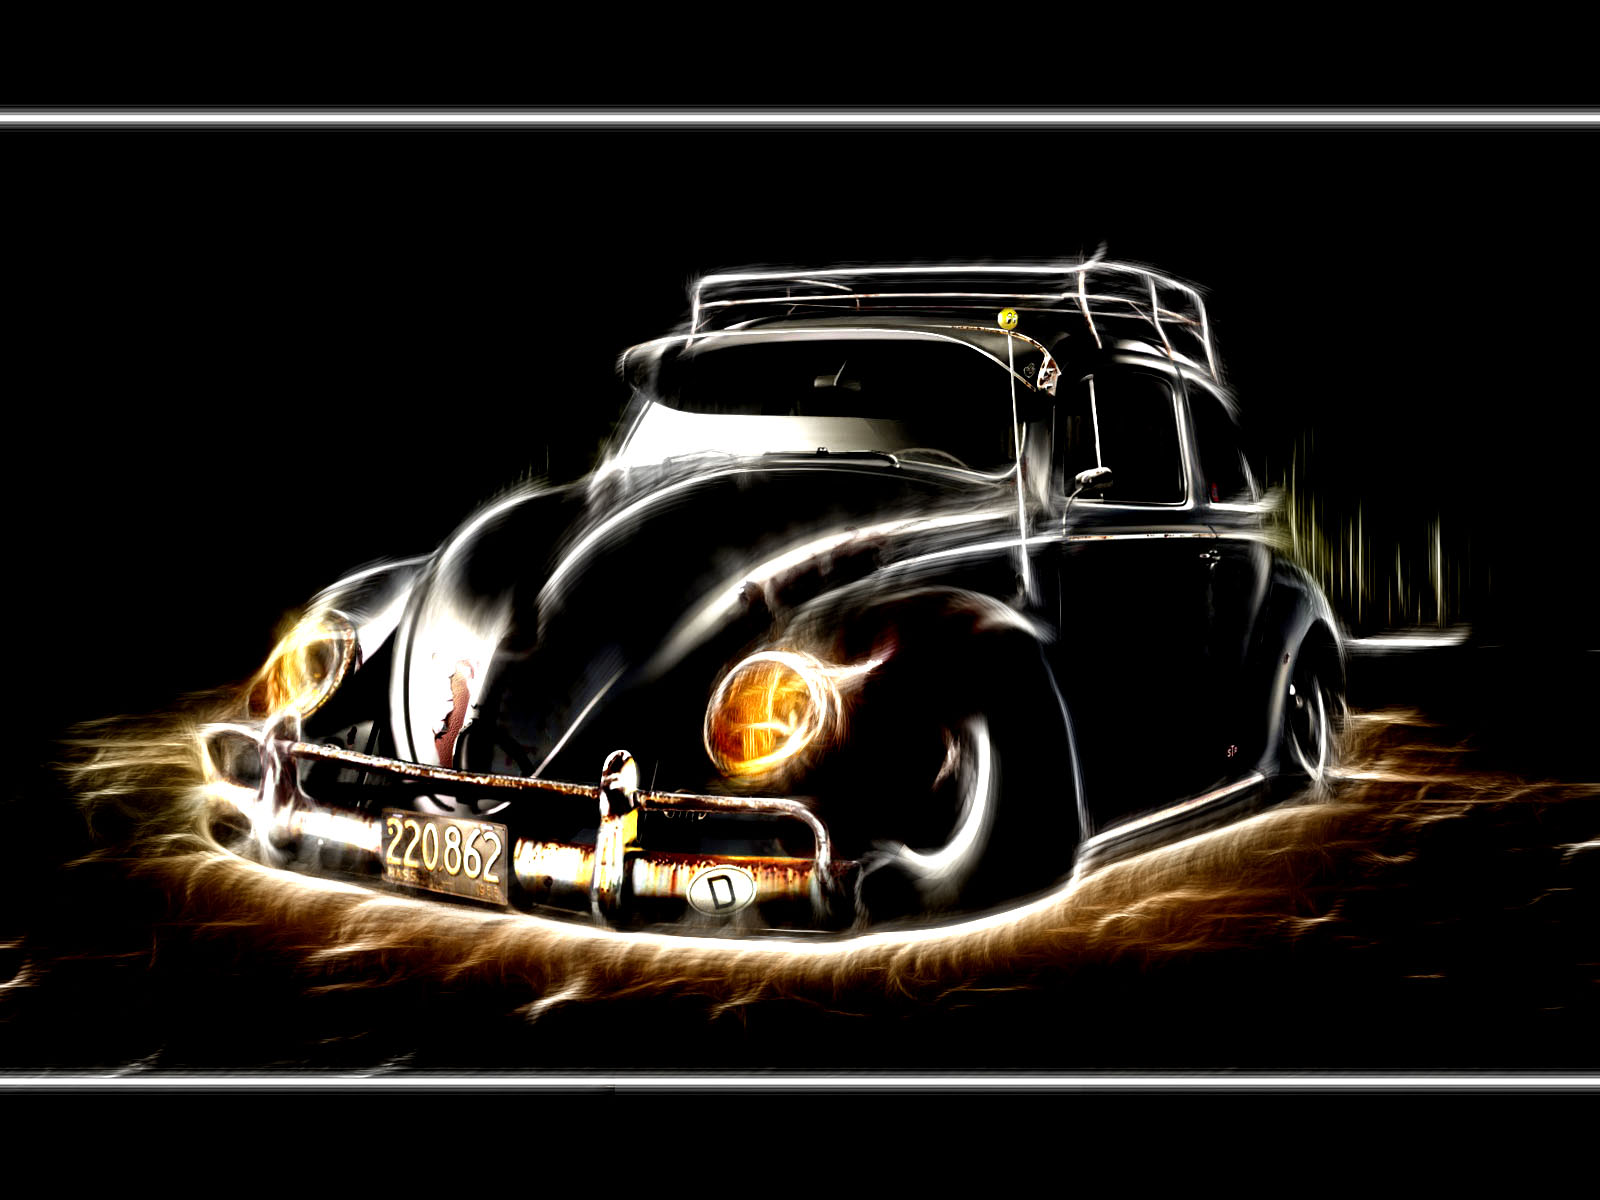 Volkswagen Beetle Computer Wallpapers Desktop Backgrounds 1600x1200 1600x1200